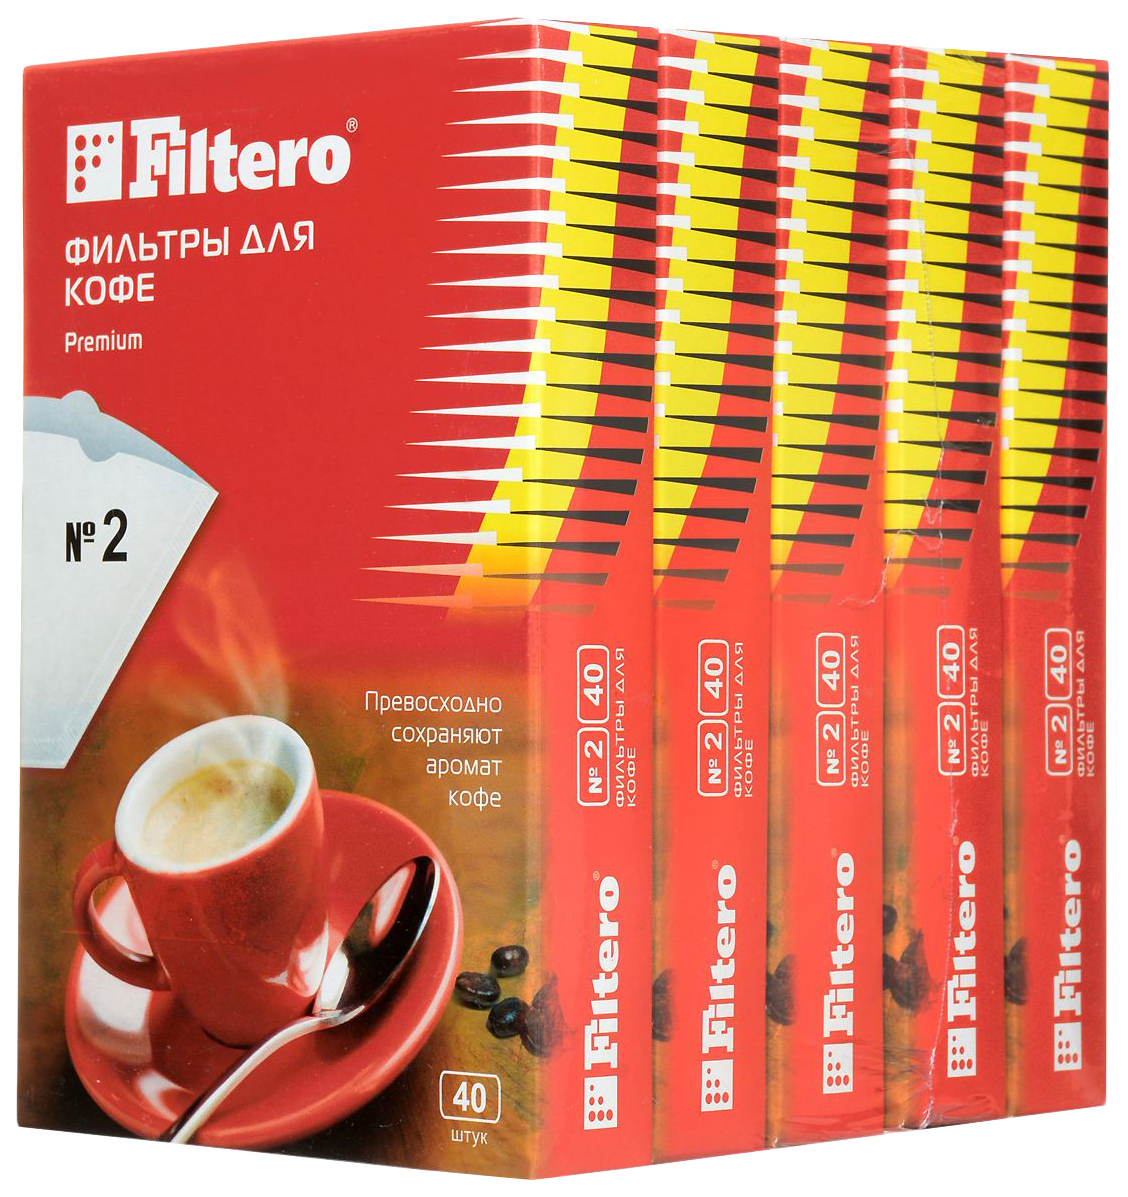 Фильтр Filtero Premium №2 фильтры для кофе filtero